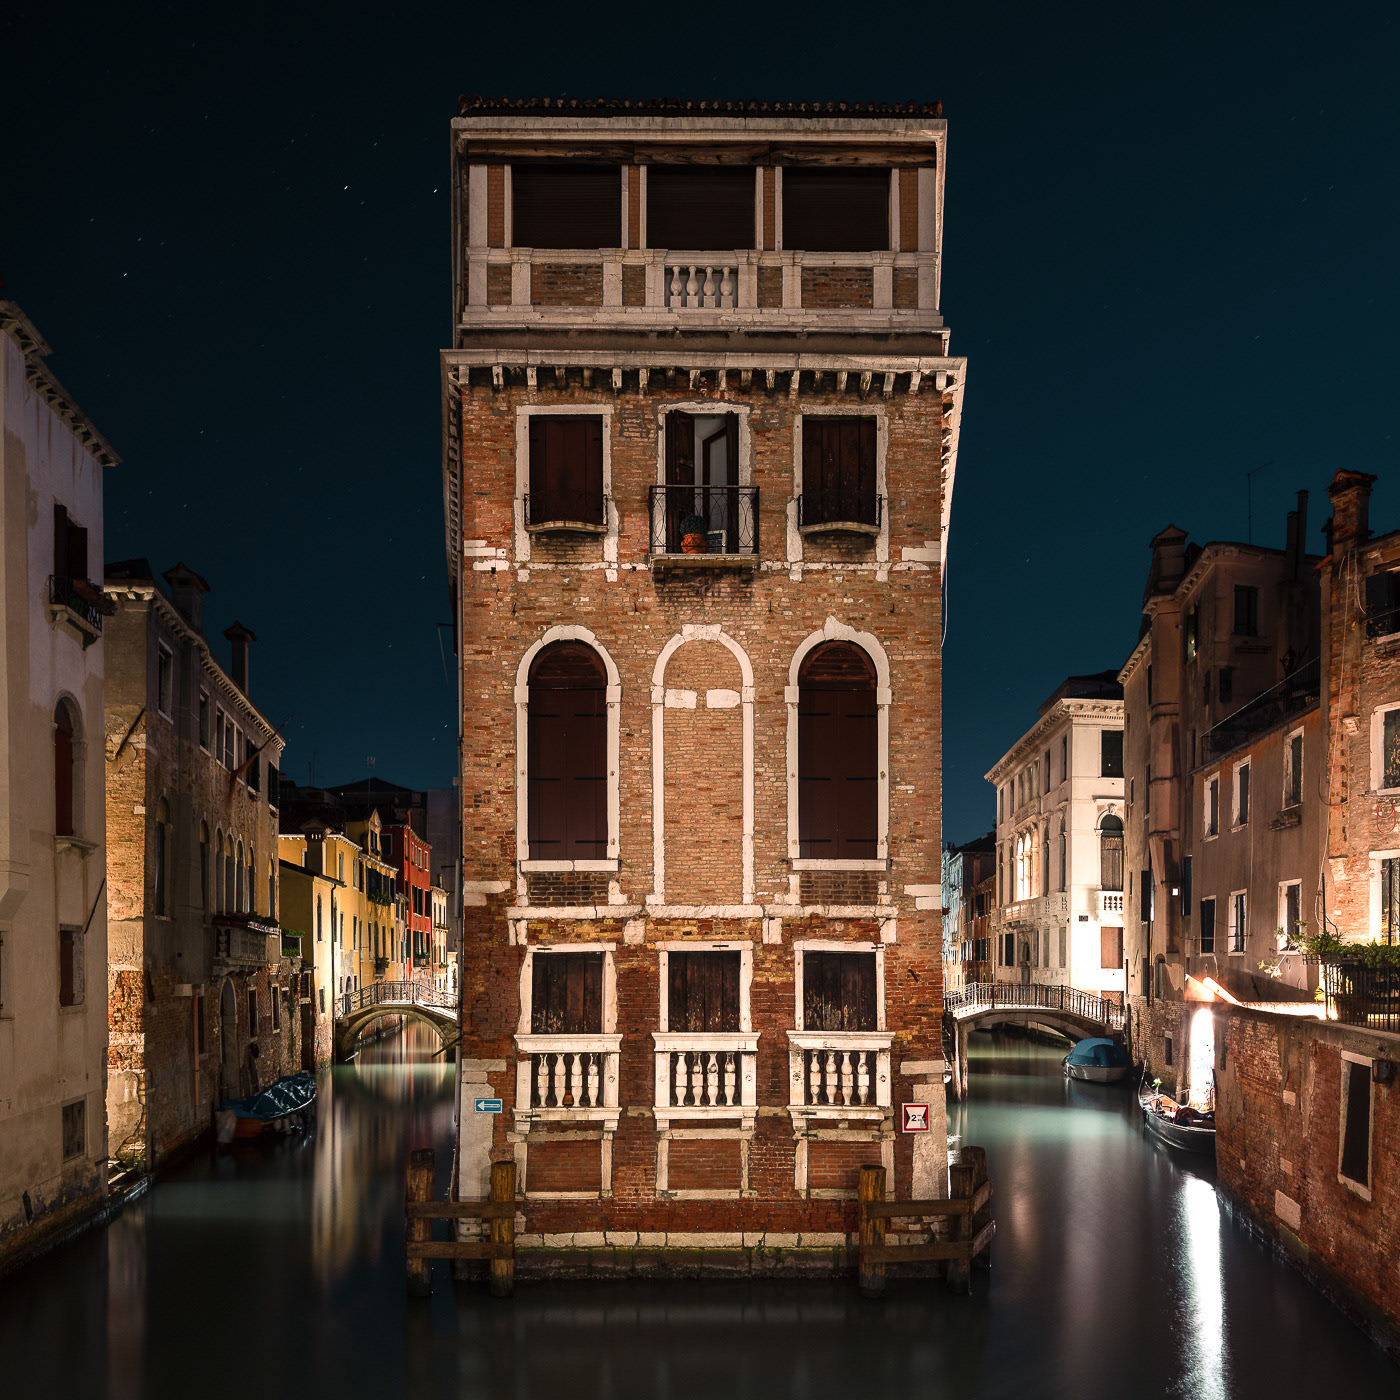 Thibaud Poirier Captures the Peaceful Beauty of “Sleeping Venice”